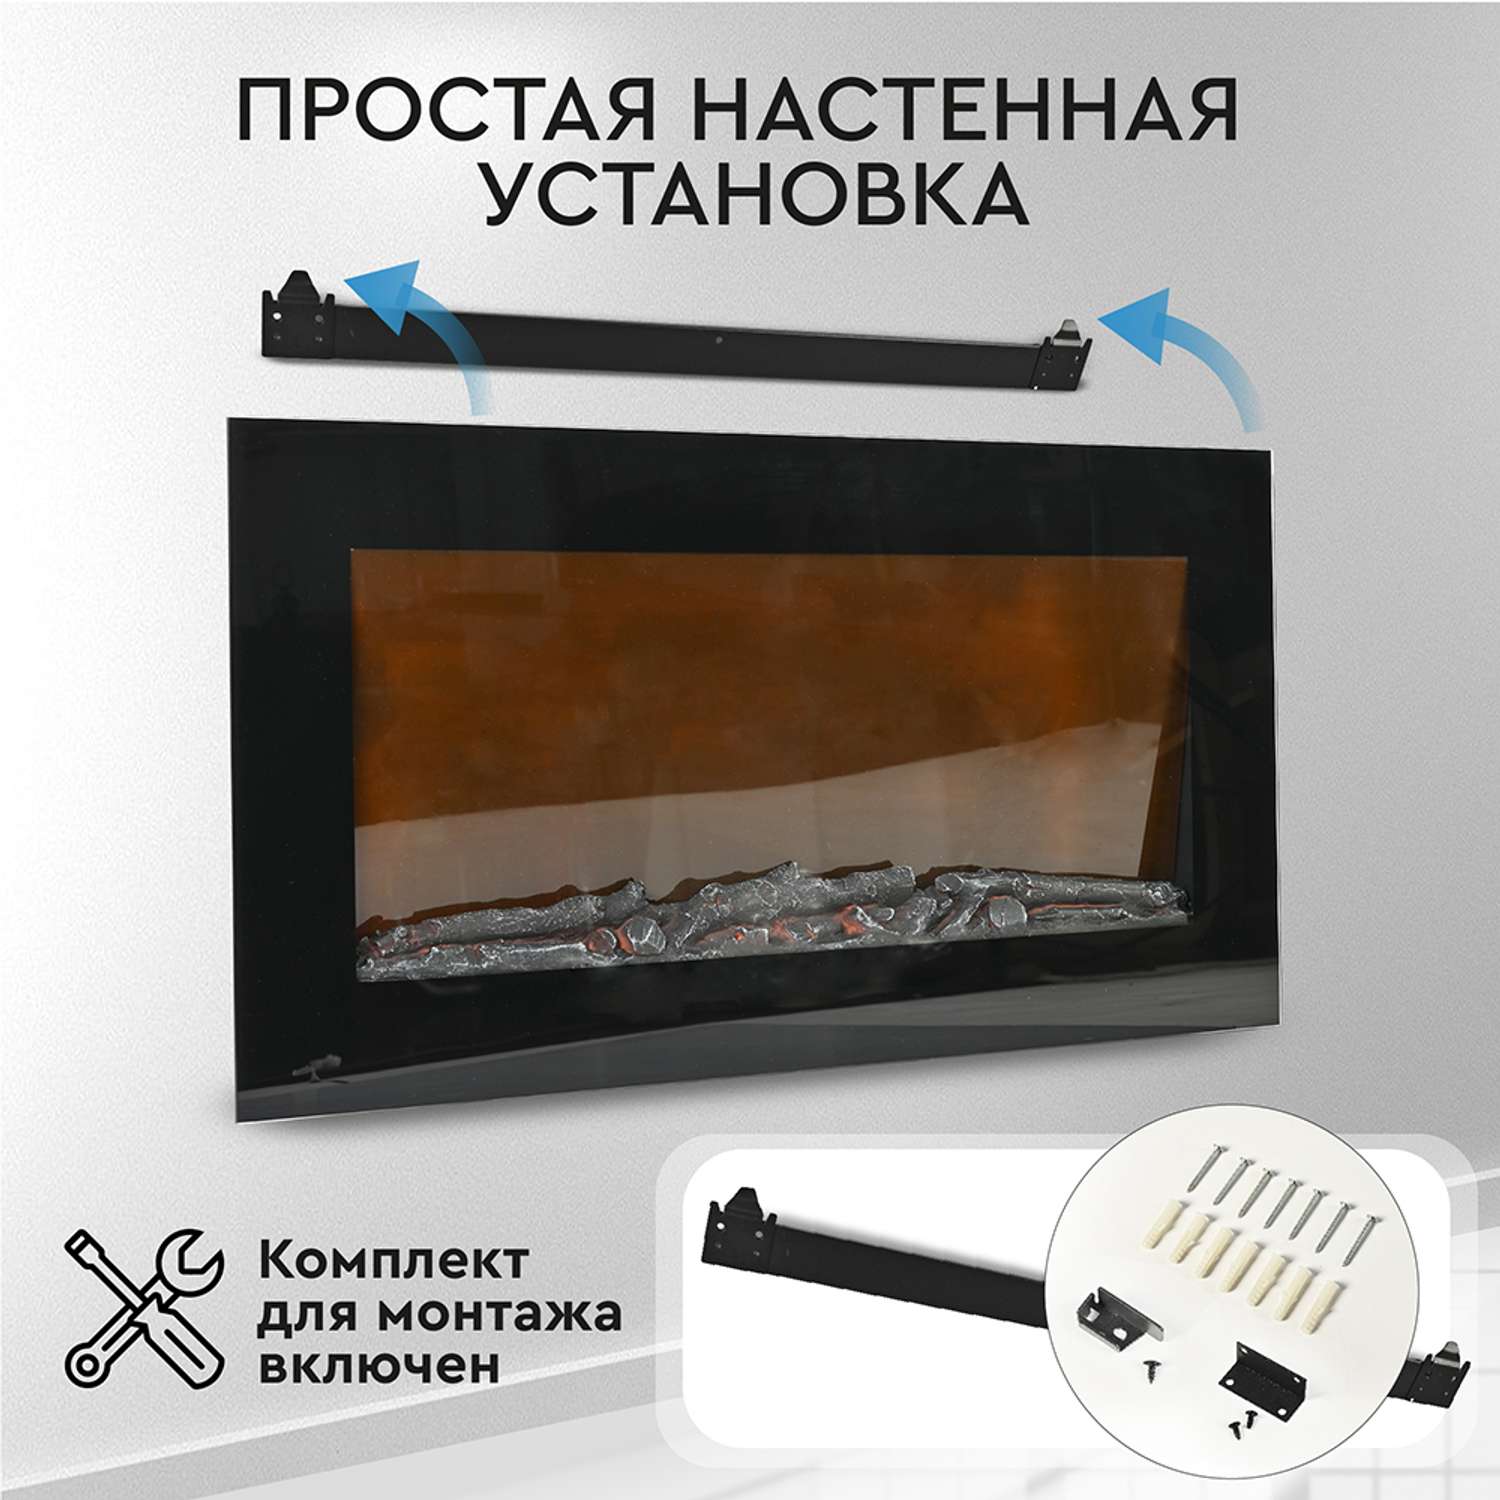 Каталог печей, каминов купить по цене интернет-магазина в городе Екатеринбурге | «Pechi-online»